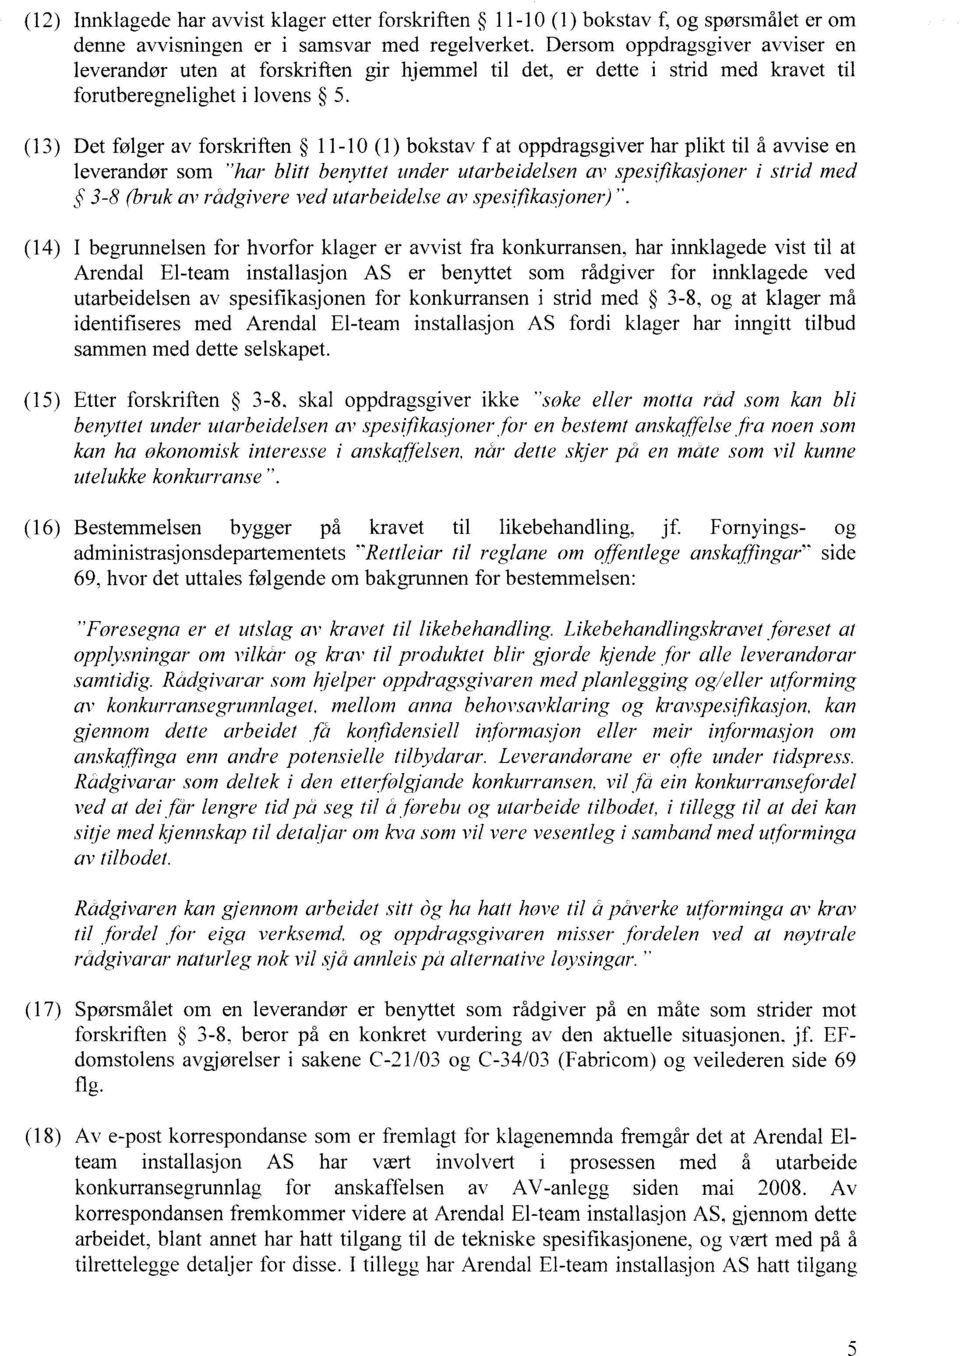 (13) Det følger av forskriften 11-10 (1) bokstav f at oppdragsgiver har plikt til å avvise en leverandør som "har blitt benyttel under utarbeidelsen av spesifikasjoner i strid med 3-8 (bruk av